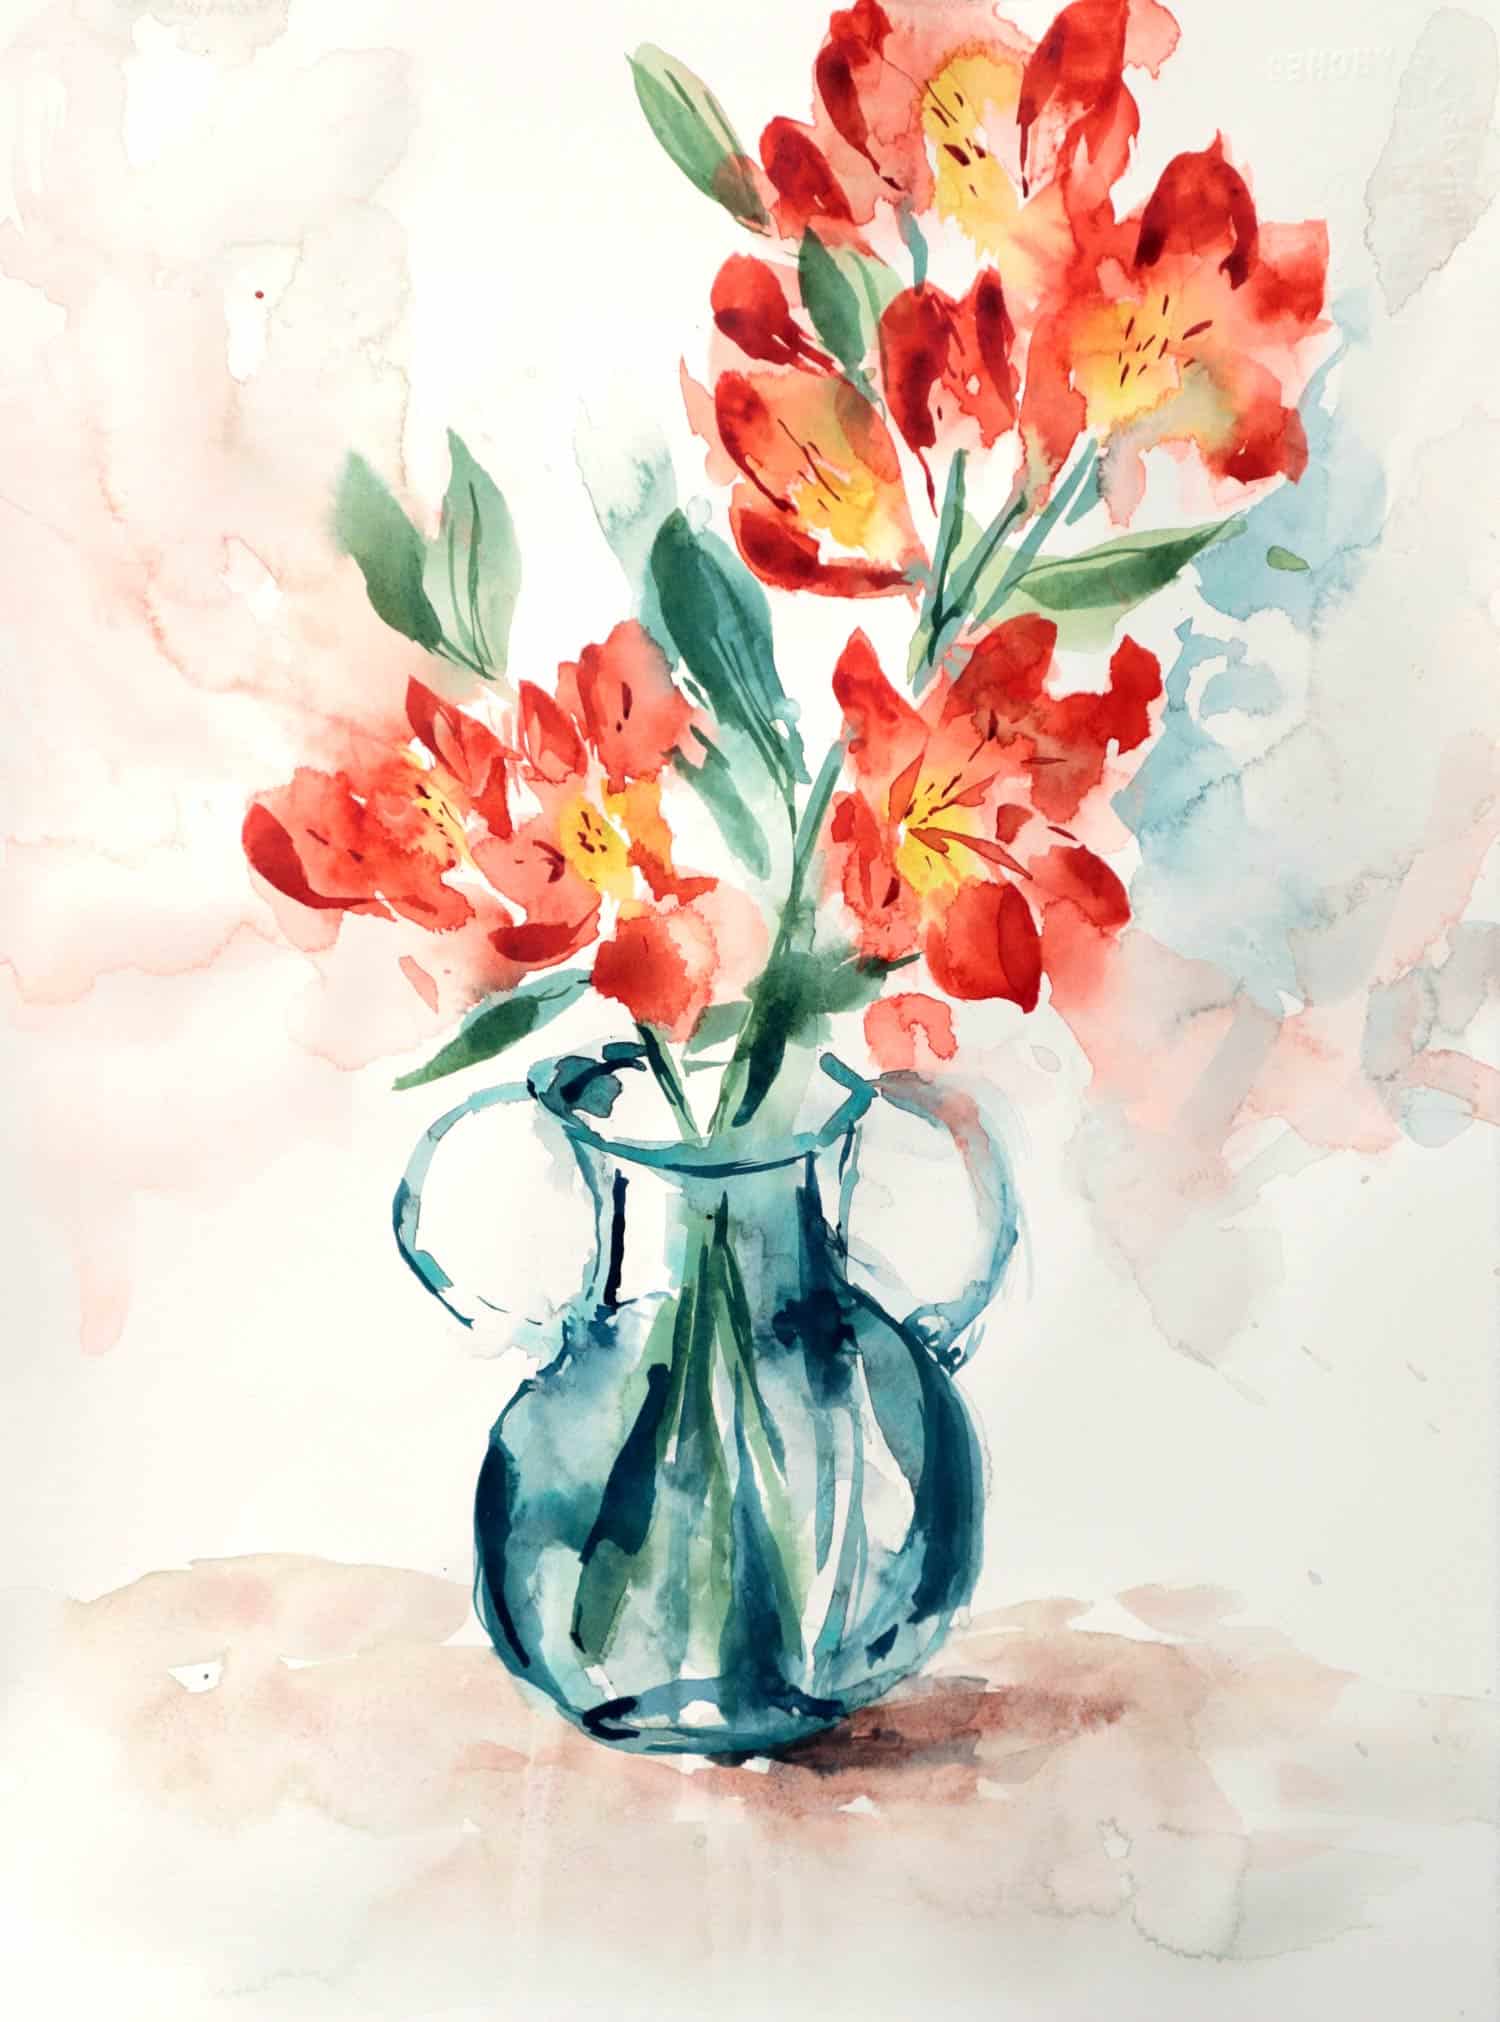 Direct 21/09 : Peindre un vase à l'aquarelle (et des fleurs !) - Ursula  Schichan